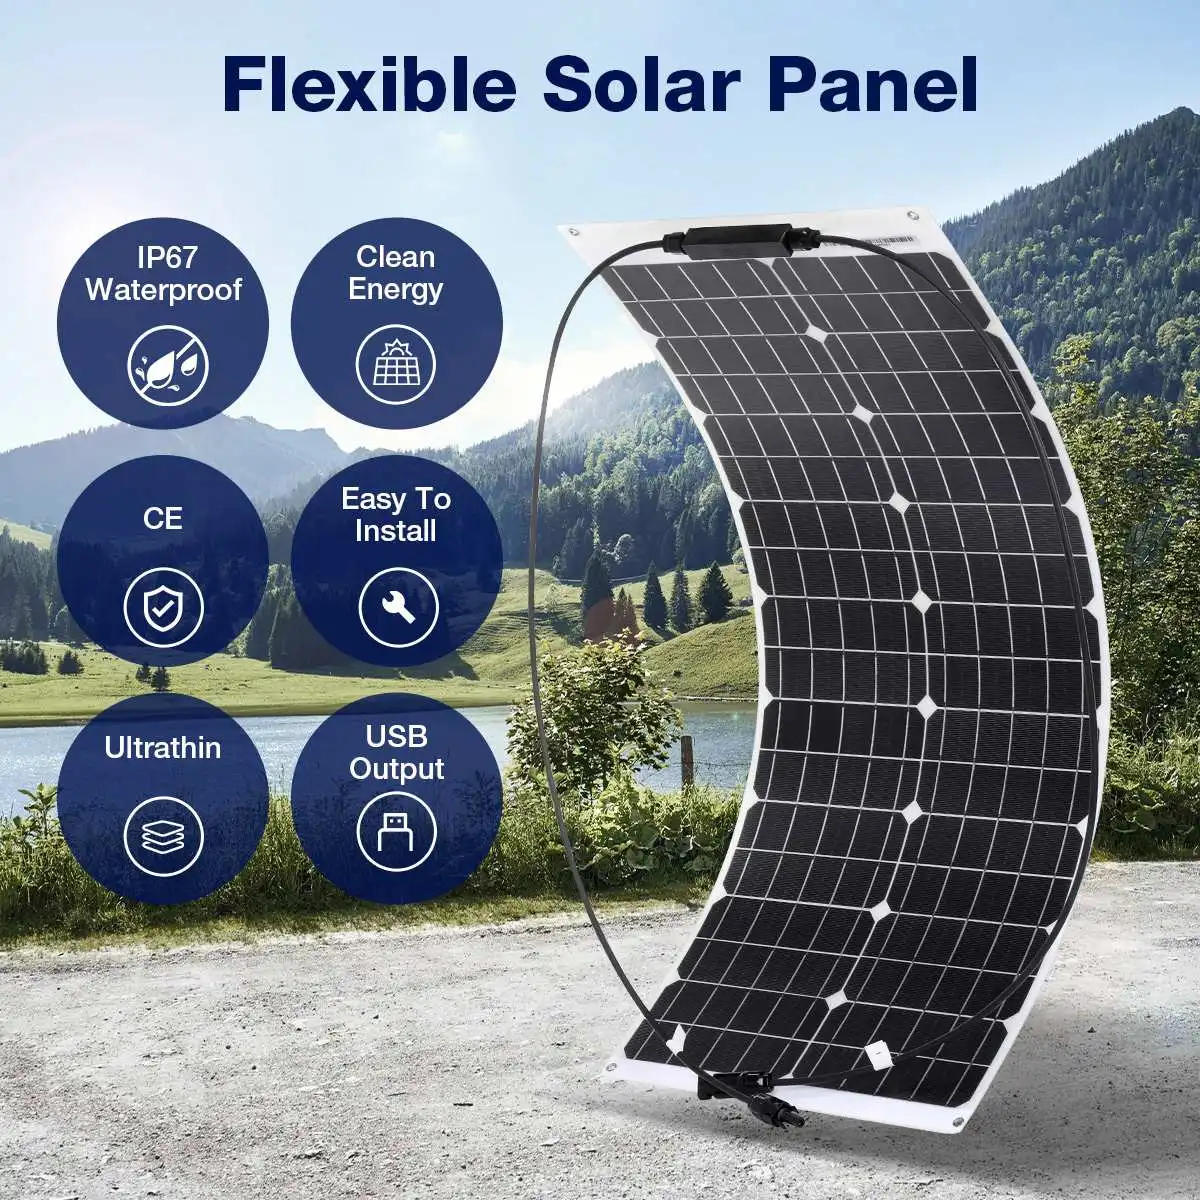 

Водонепроницаемая солнечная панель ETFE 1000 Вт с выходом USB, 18 в, гибкая монокристаллическая солнечная батарея для RV, автомобиля, кемпинга, зарядное устройство 12 В